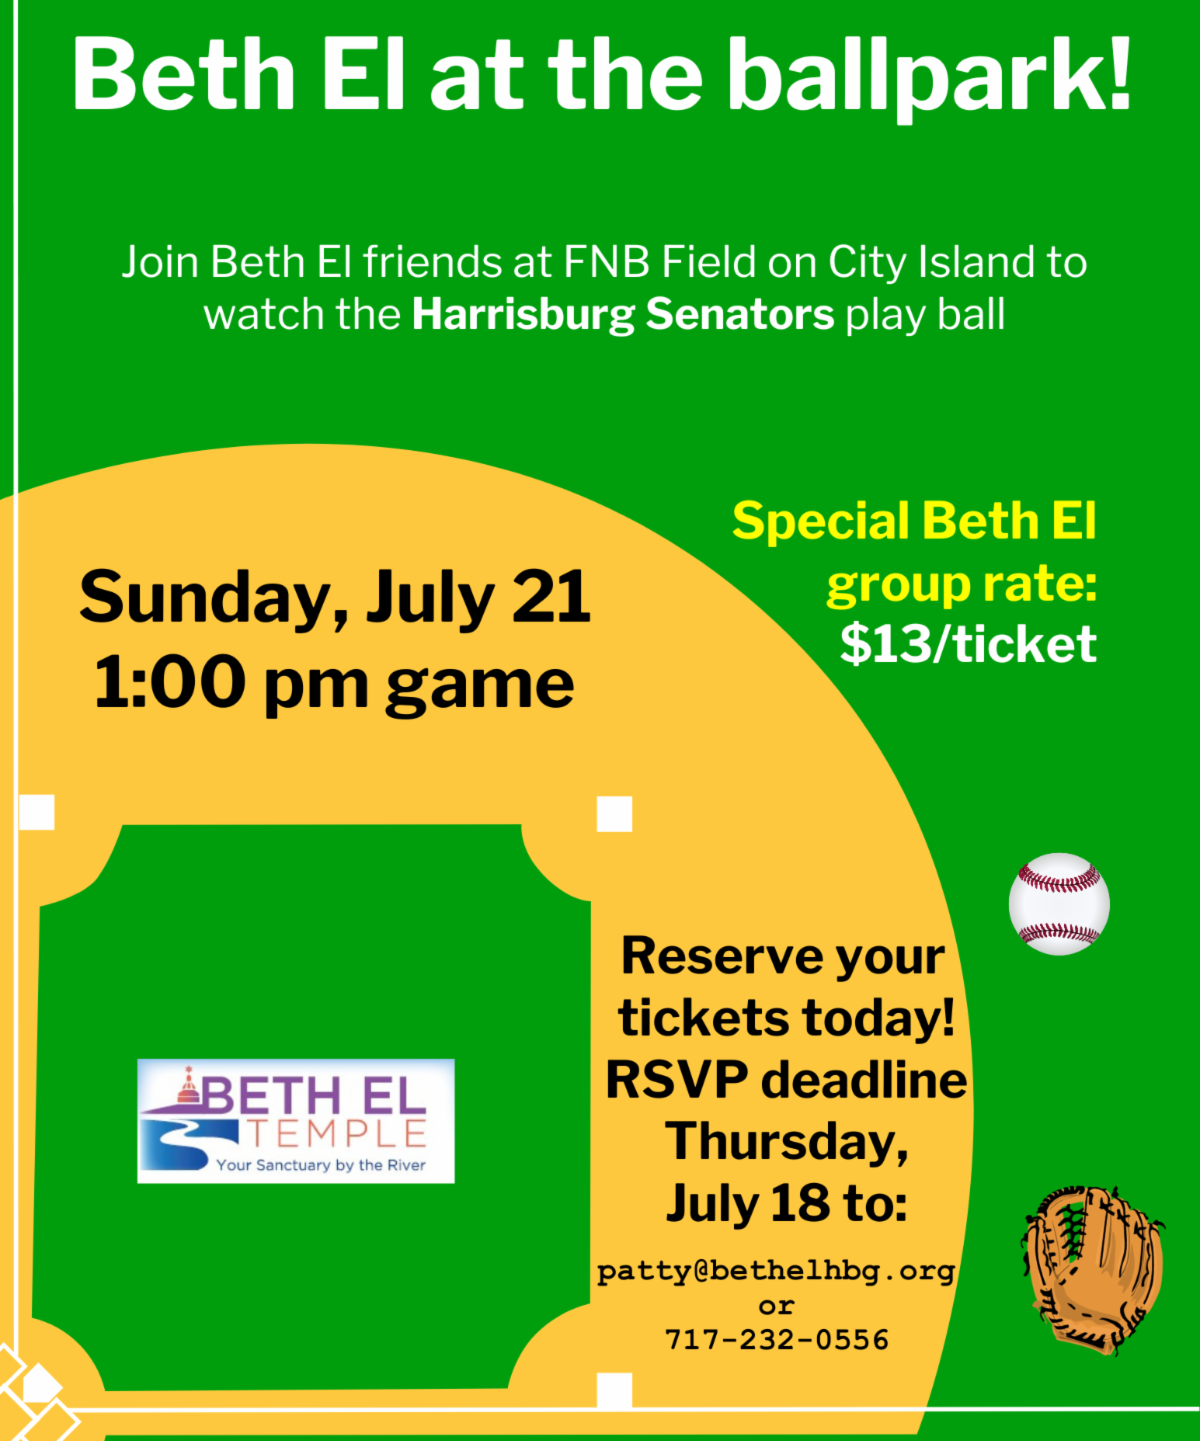 Beth El at the Ballpark: Harrisburg Senators Game